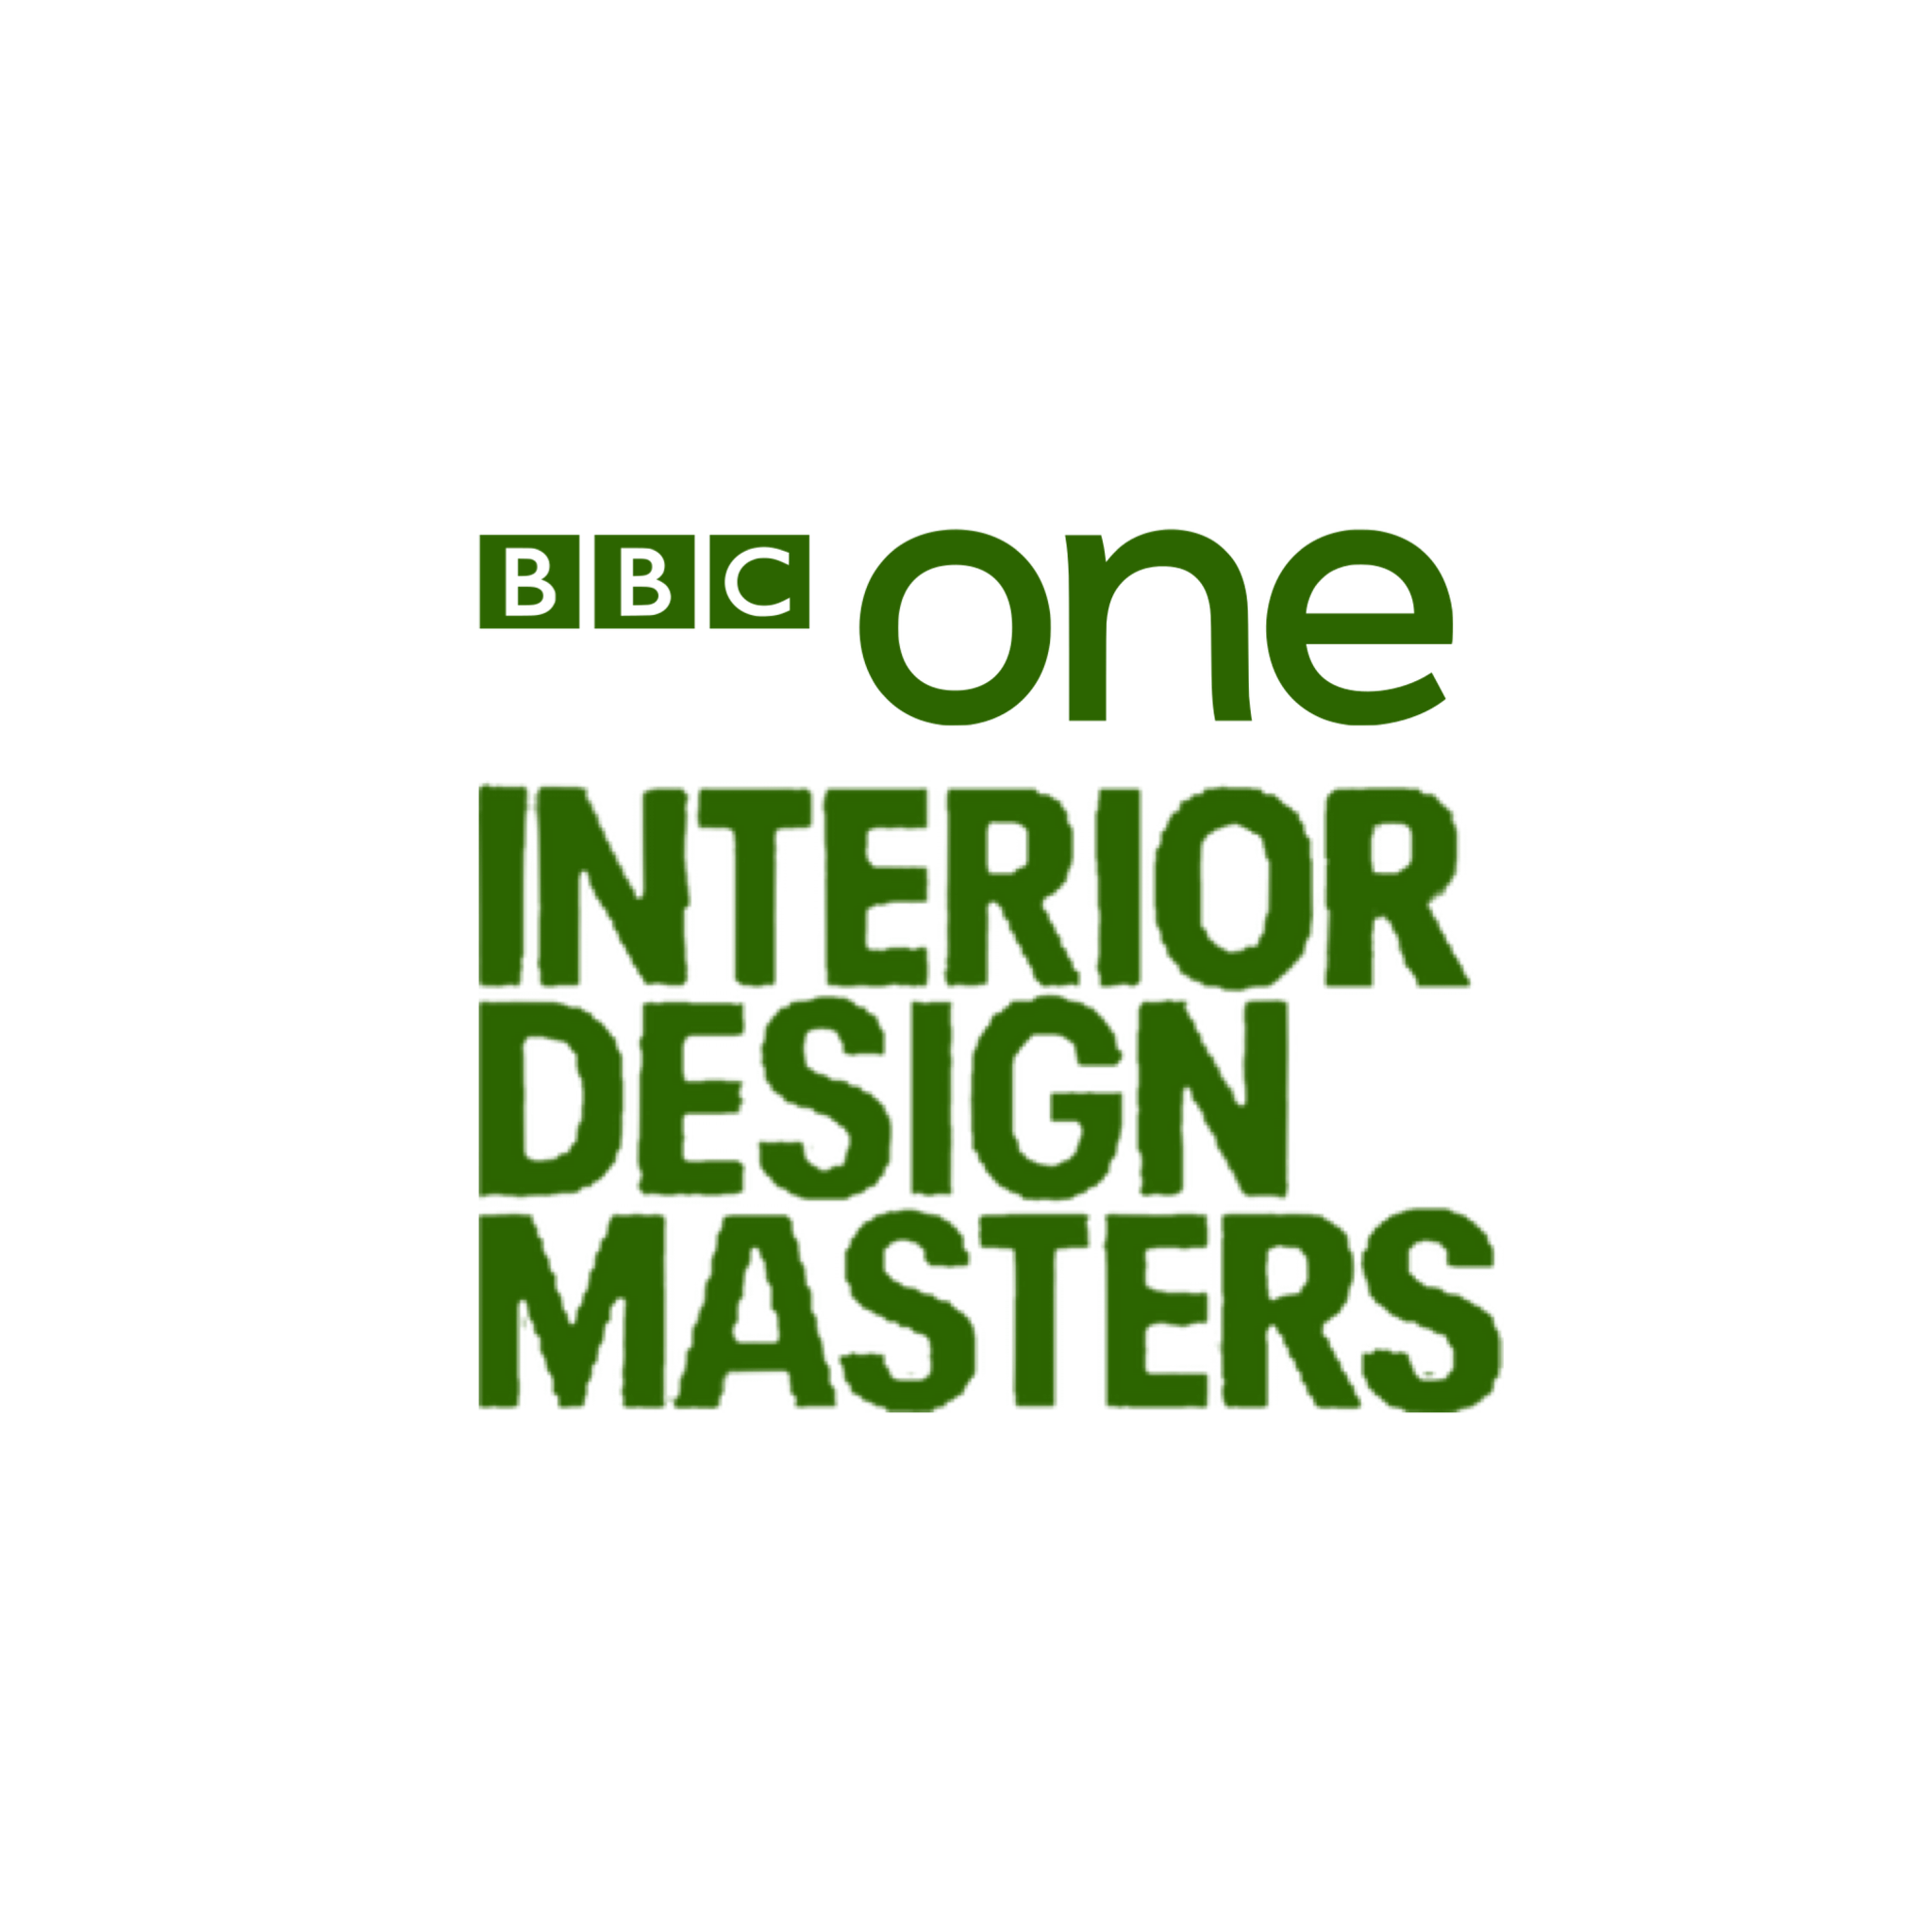 Series 3 - Interior Design Masters